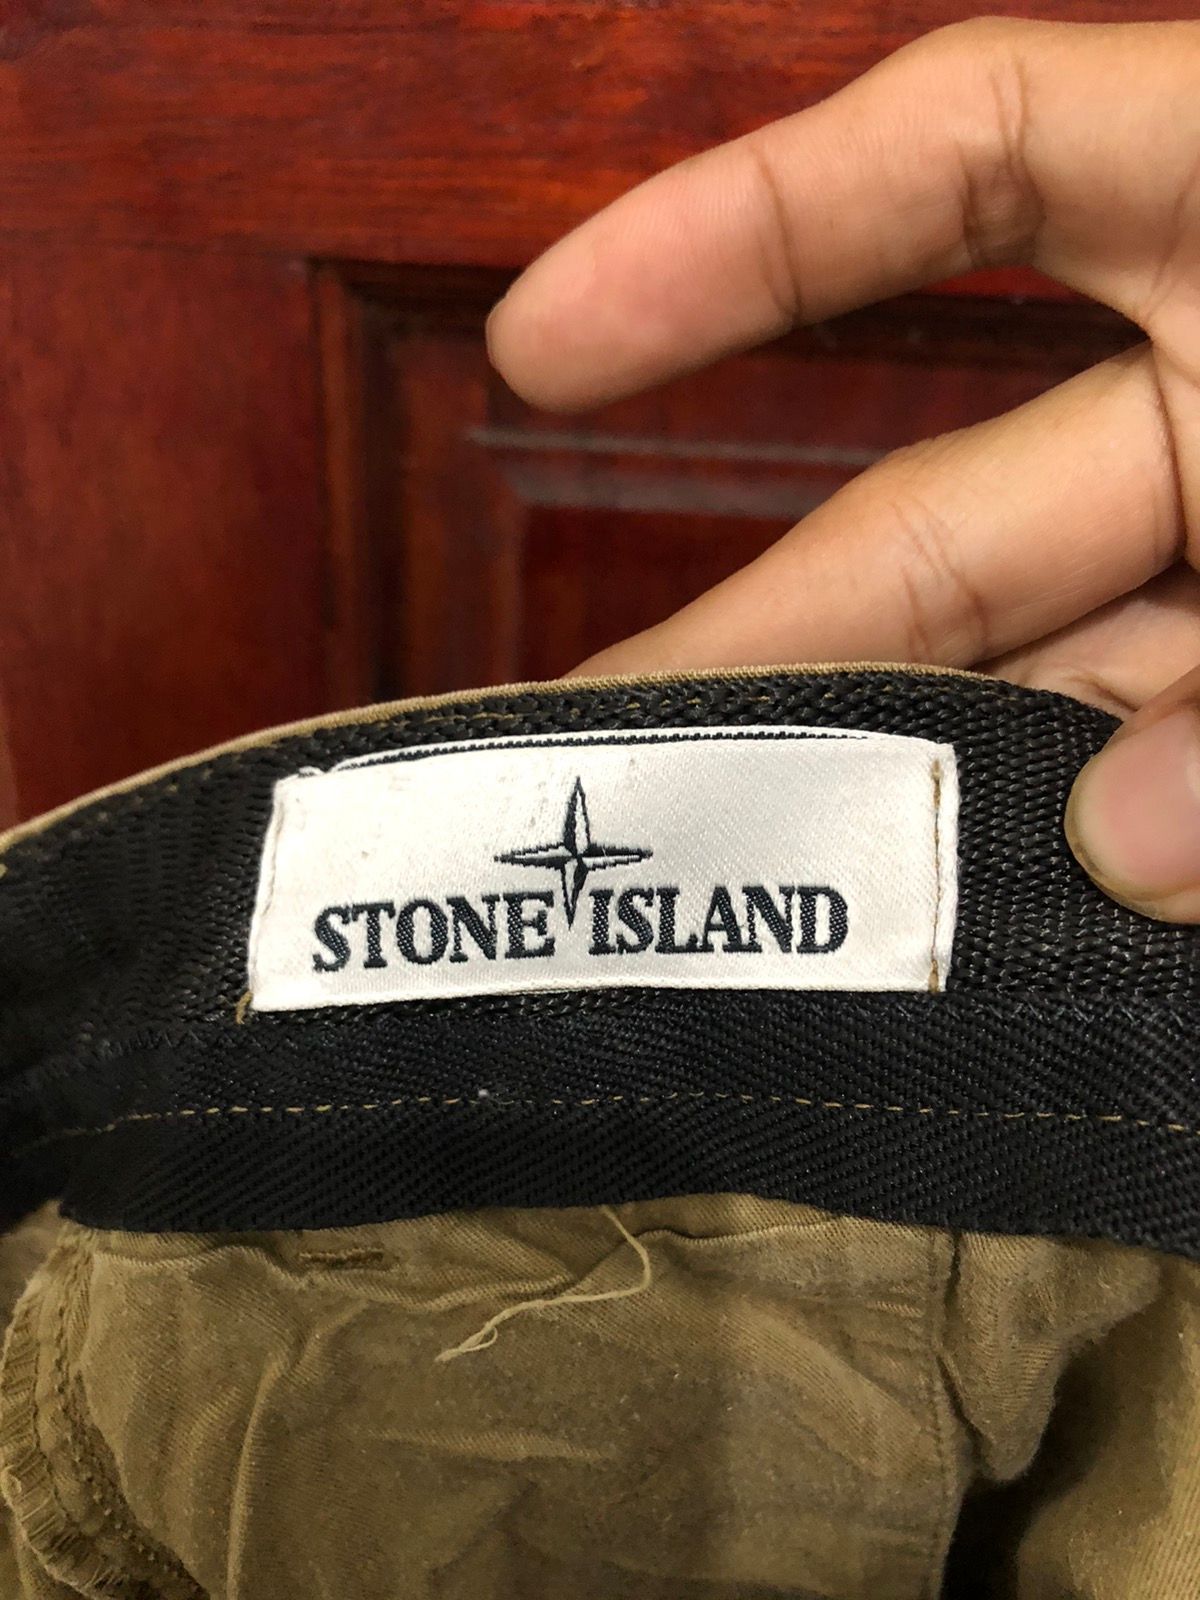 Stone Island Denim Chino Pant Made Italy - 11